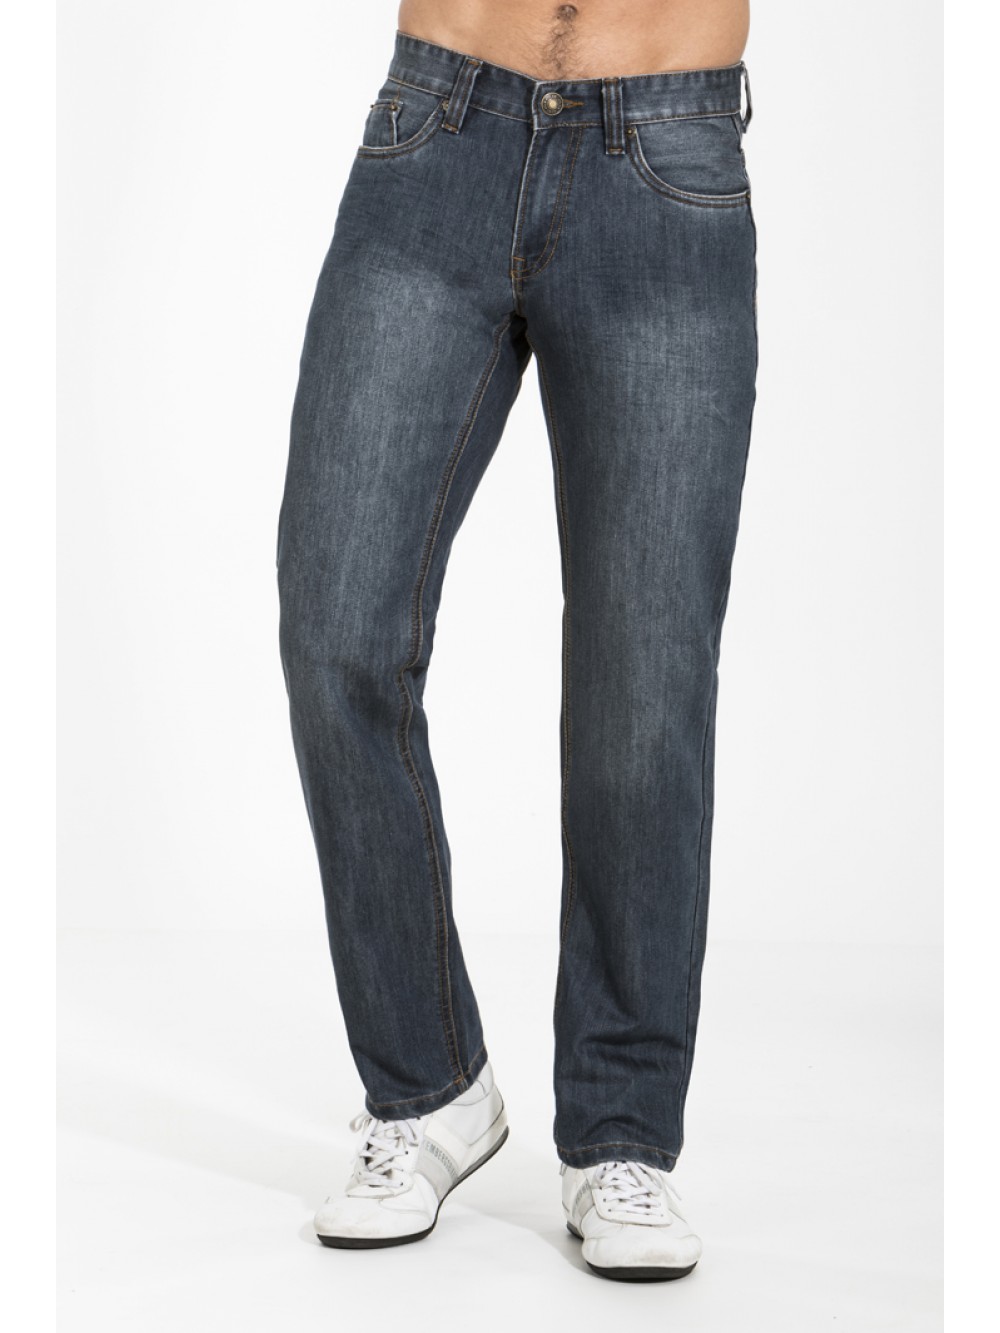 Jeans JSM256 slim fit - blue